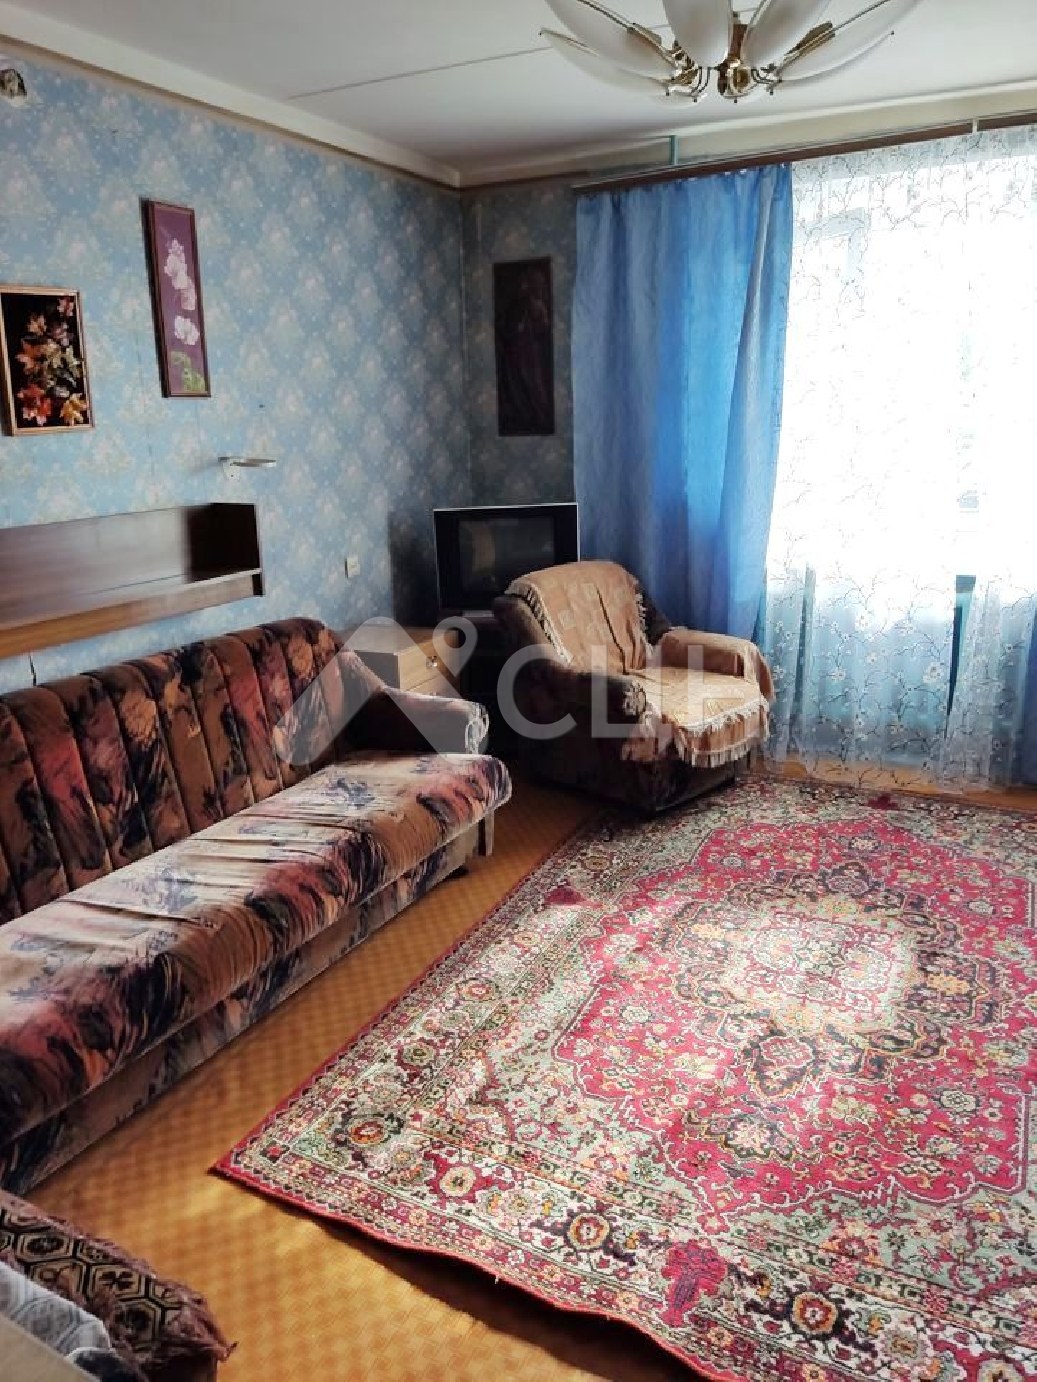 обЪявления саров квартиры
: Г. Саров, улица Некрасова, 11, 3-комн квартира, этаж 2 из 9, продажа.